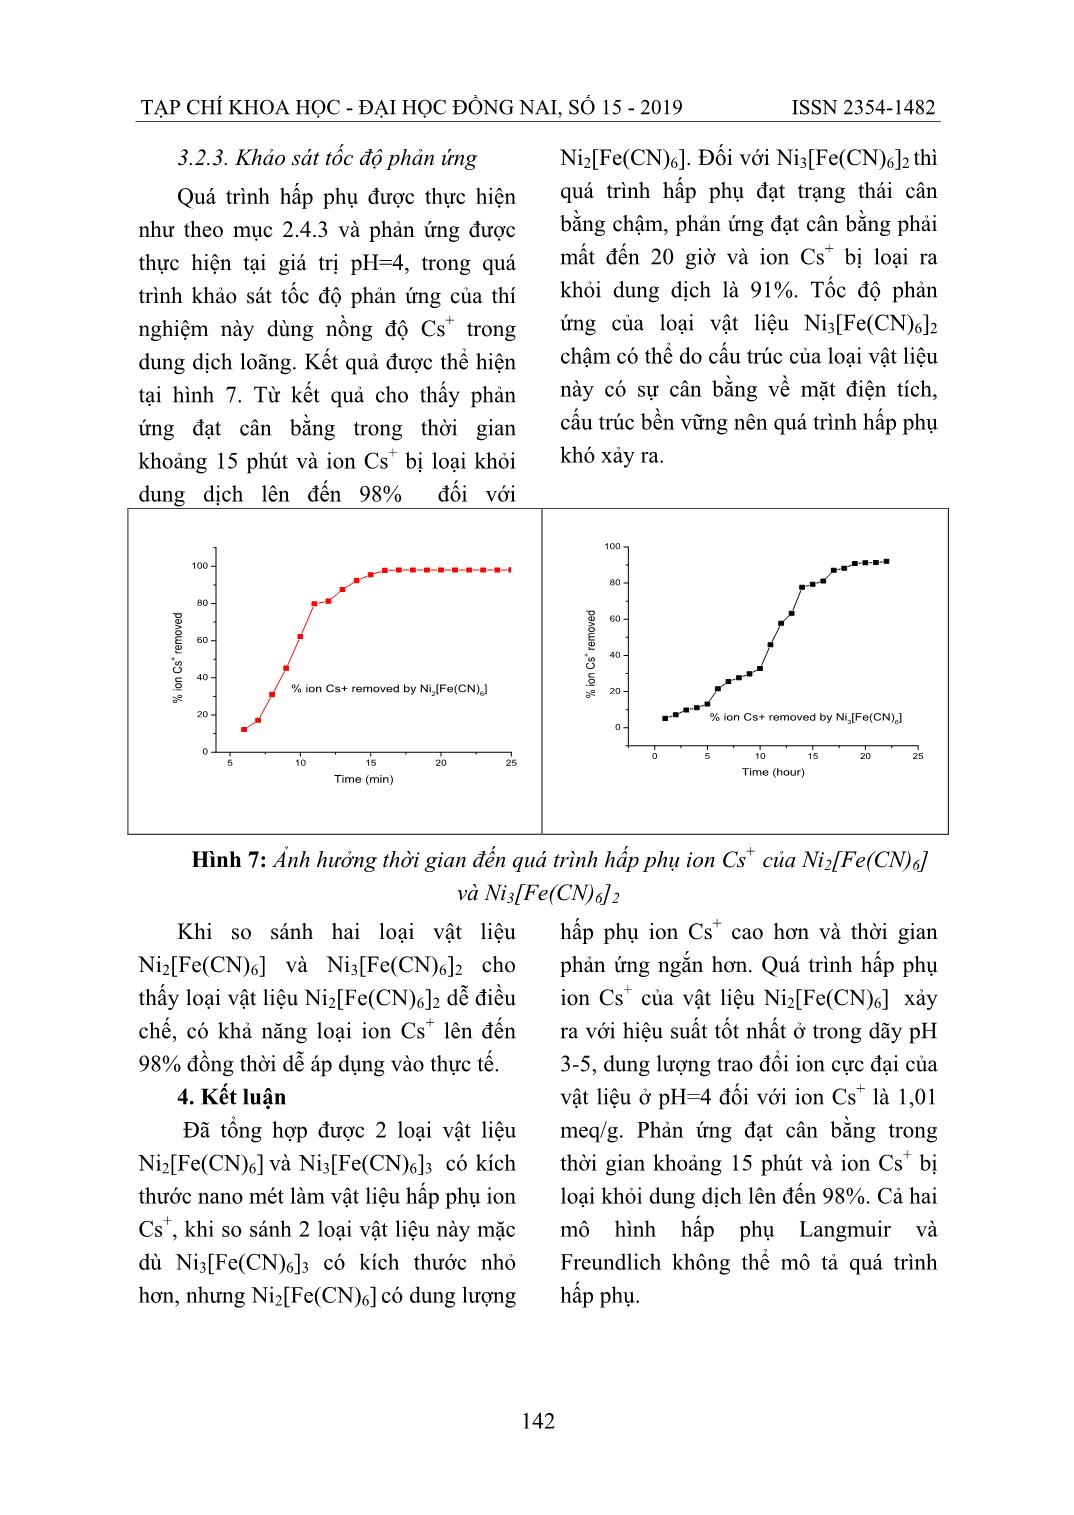 Nghiên cứu quá trình hấp phụ Cs+ bởi vật liệu Nano Ni2[Fe(CN)6] và Ni3[Fe(CN)6]2 trang 10